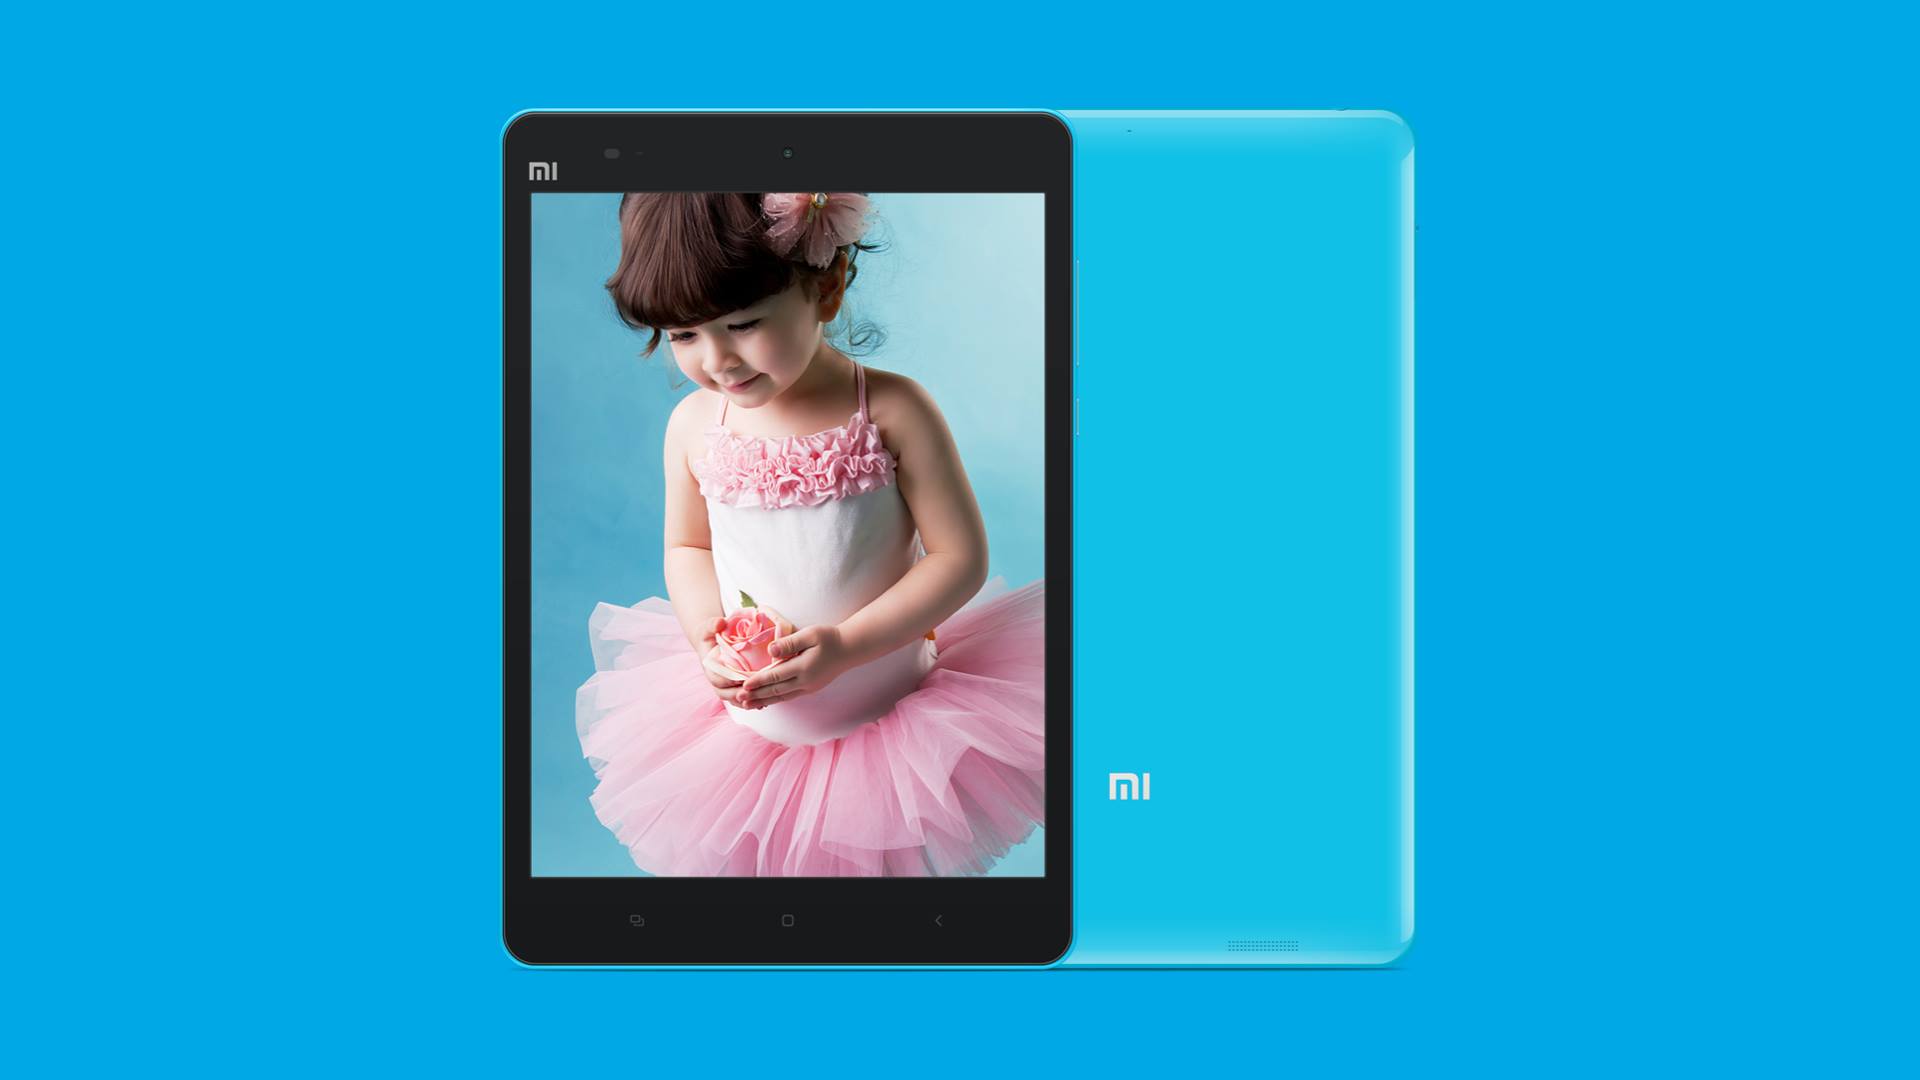 Xiaomi Mi Pad 2GB/16GB Blue